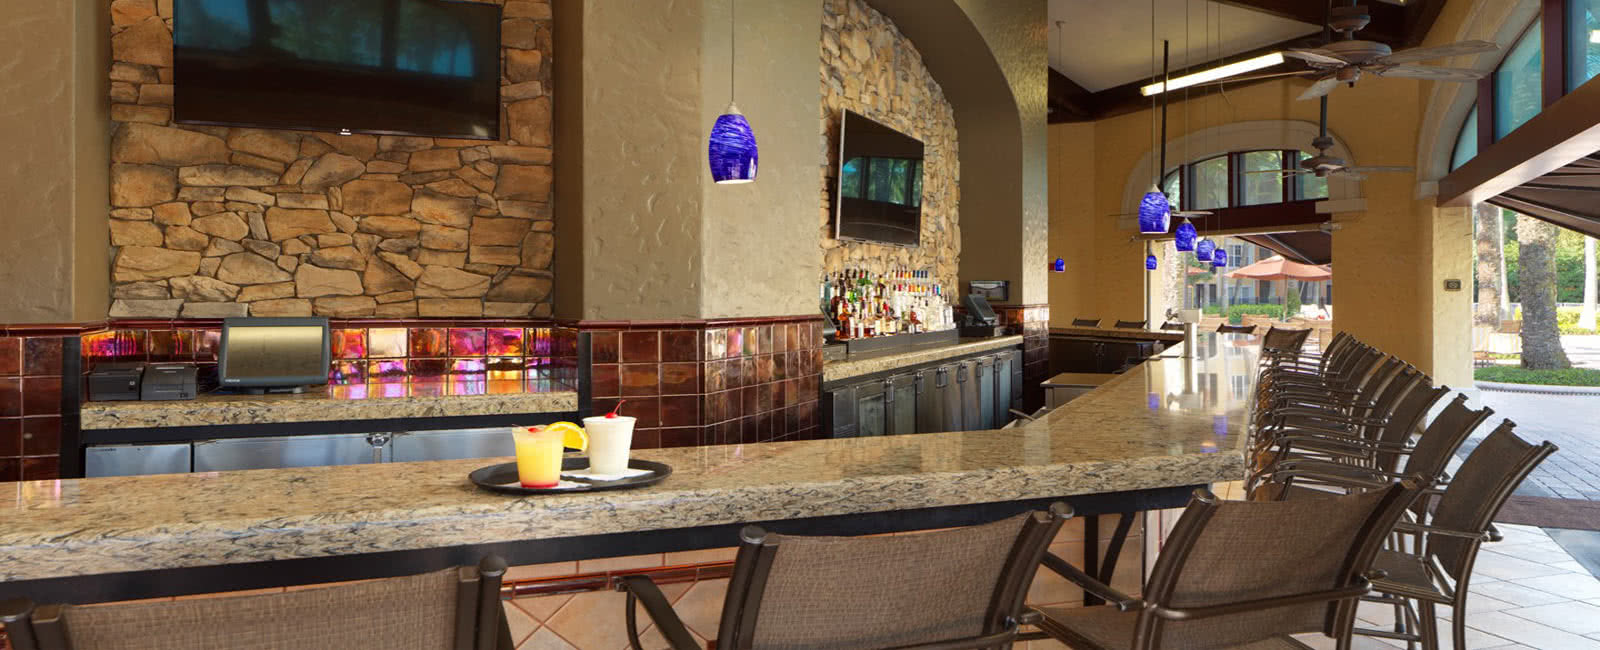 Pool Bar of Hilton Grand Vacations Club at Tuscany Village in Orlando, Florida